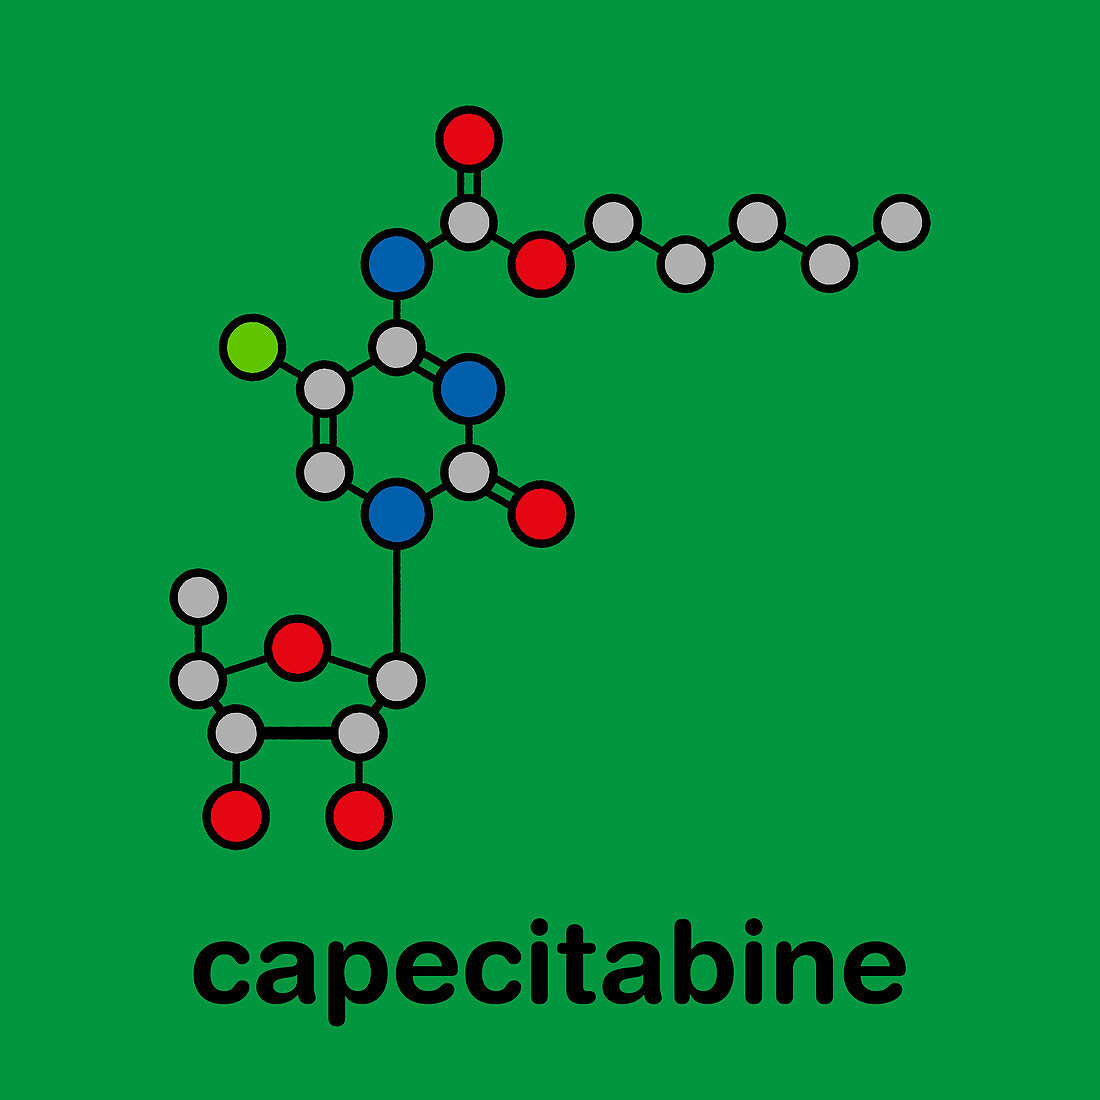 Capecitabine cancer drug molecule, illustration